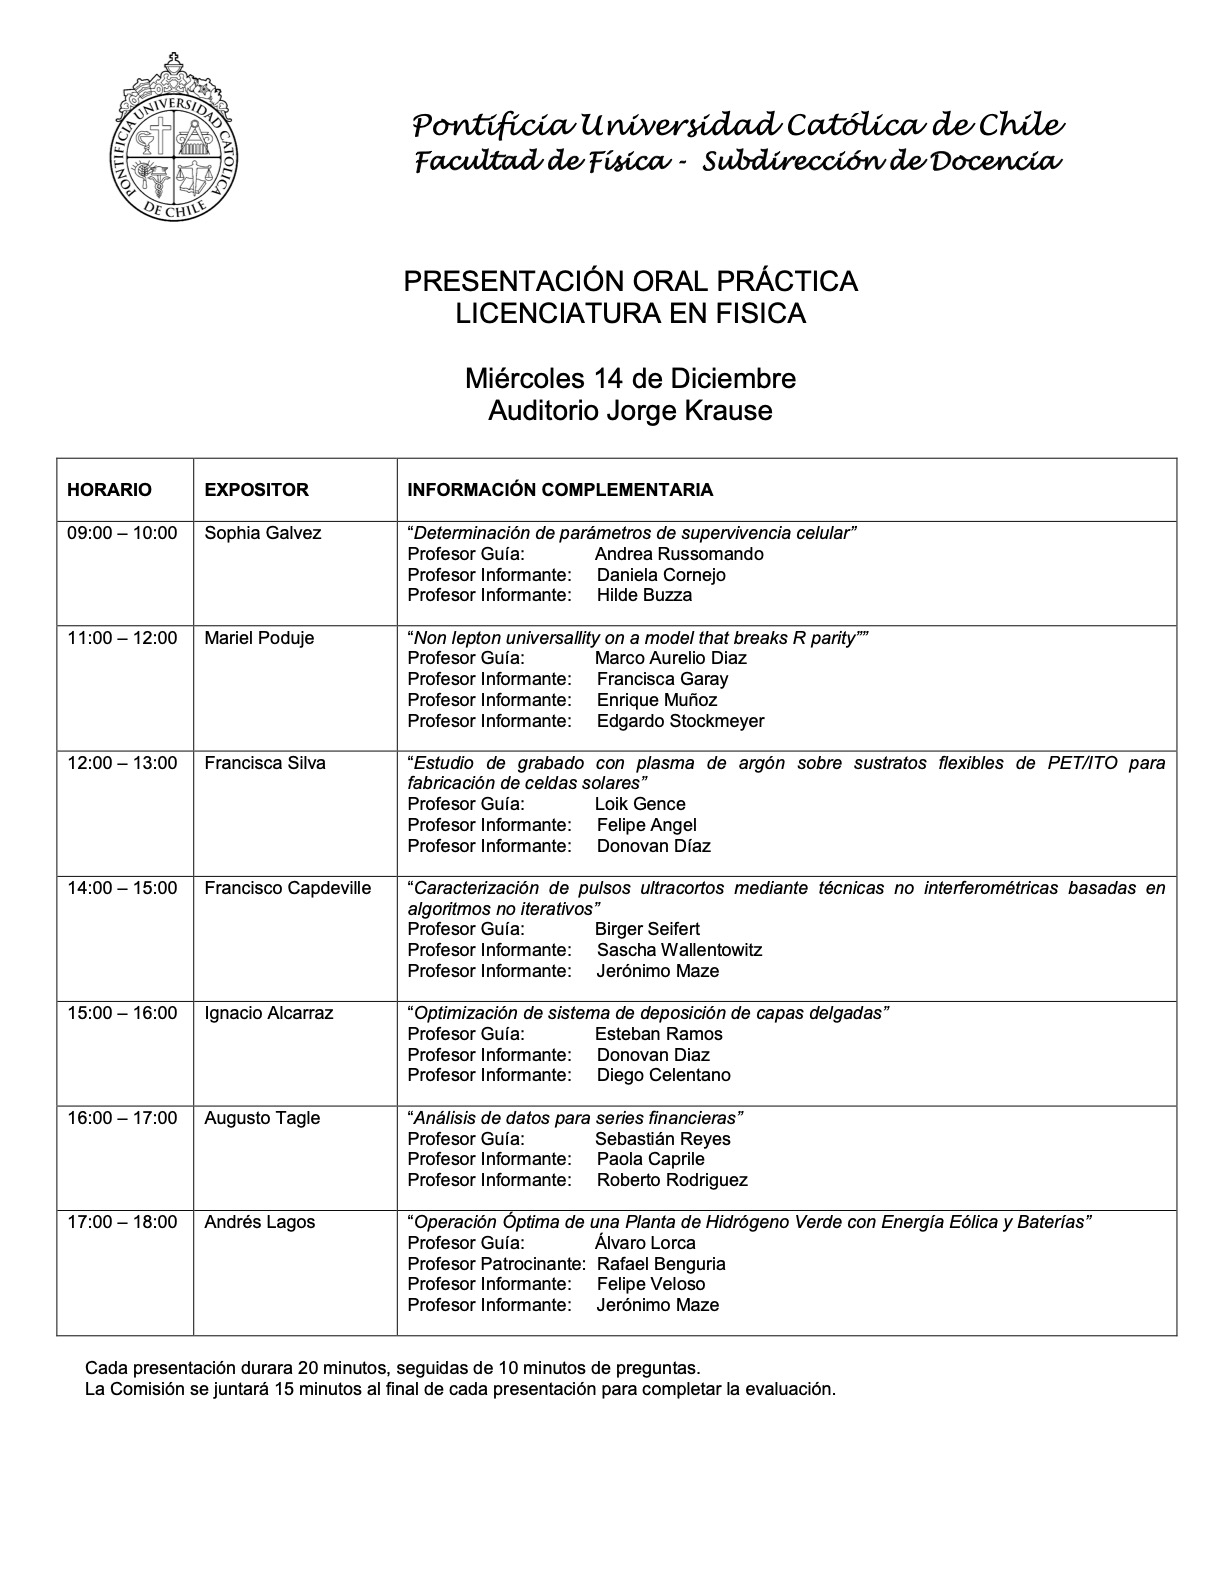 Calendarios de presentación de prácticas de Licenciatura en Física (14 y 15 de diciembre)